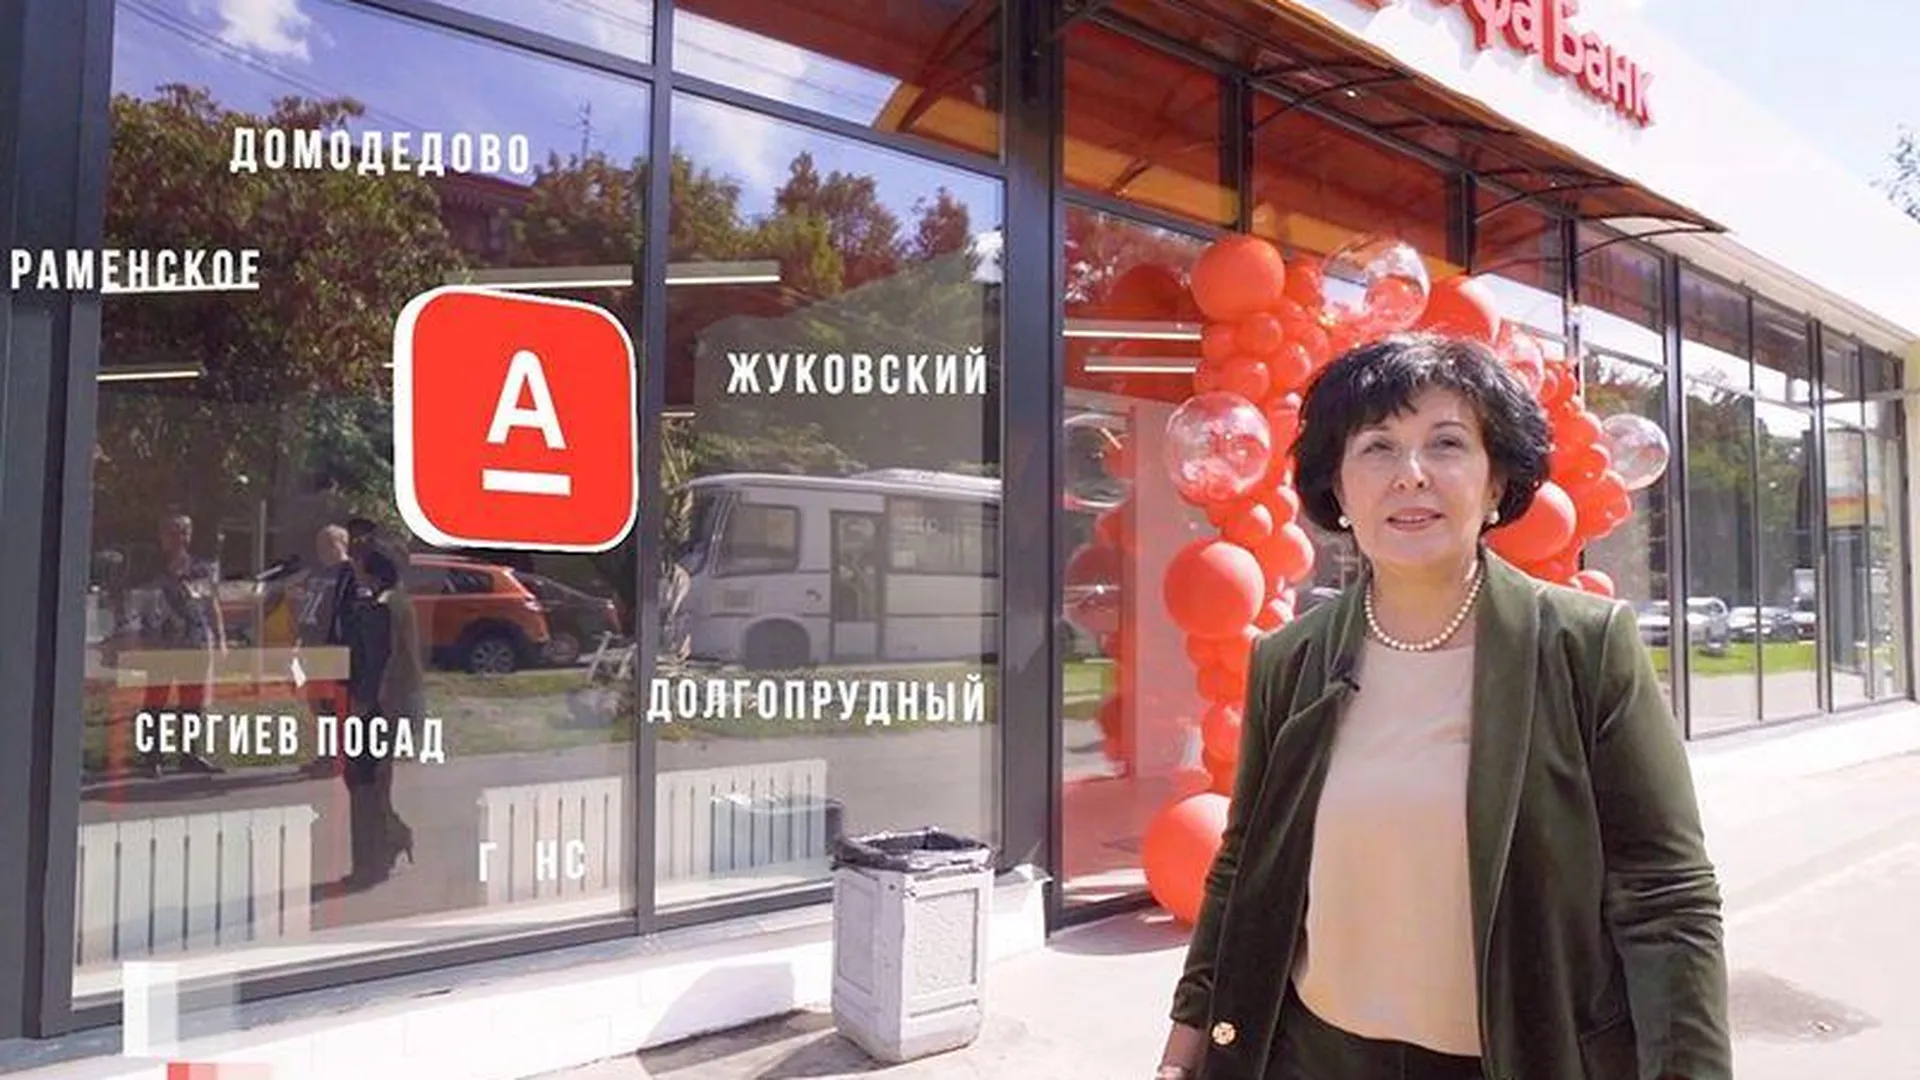 Живое общение и высокие технологии: Альфа-Банк открыл 12 новых офисов в Подмосковье